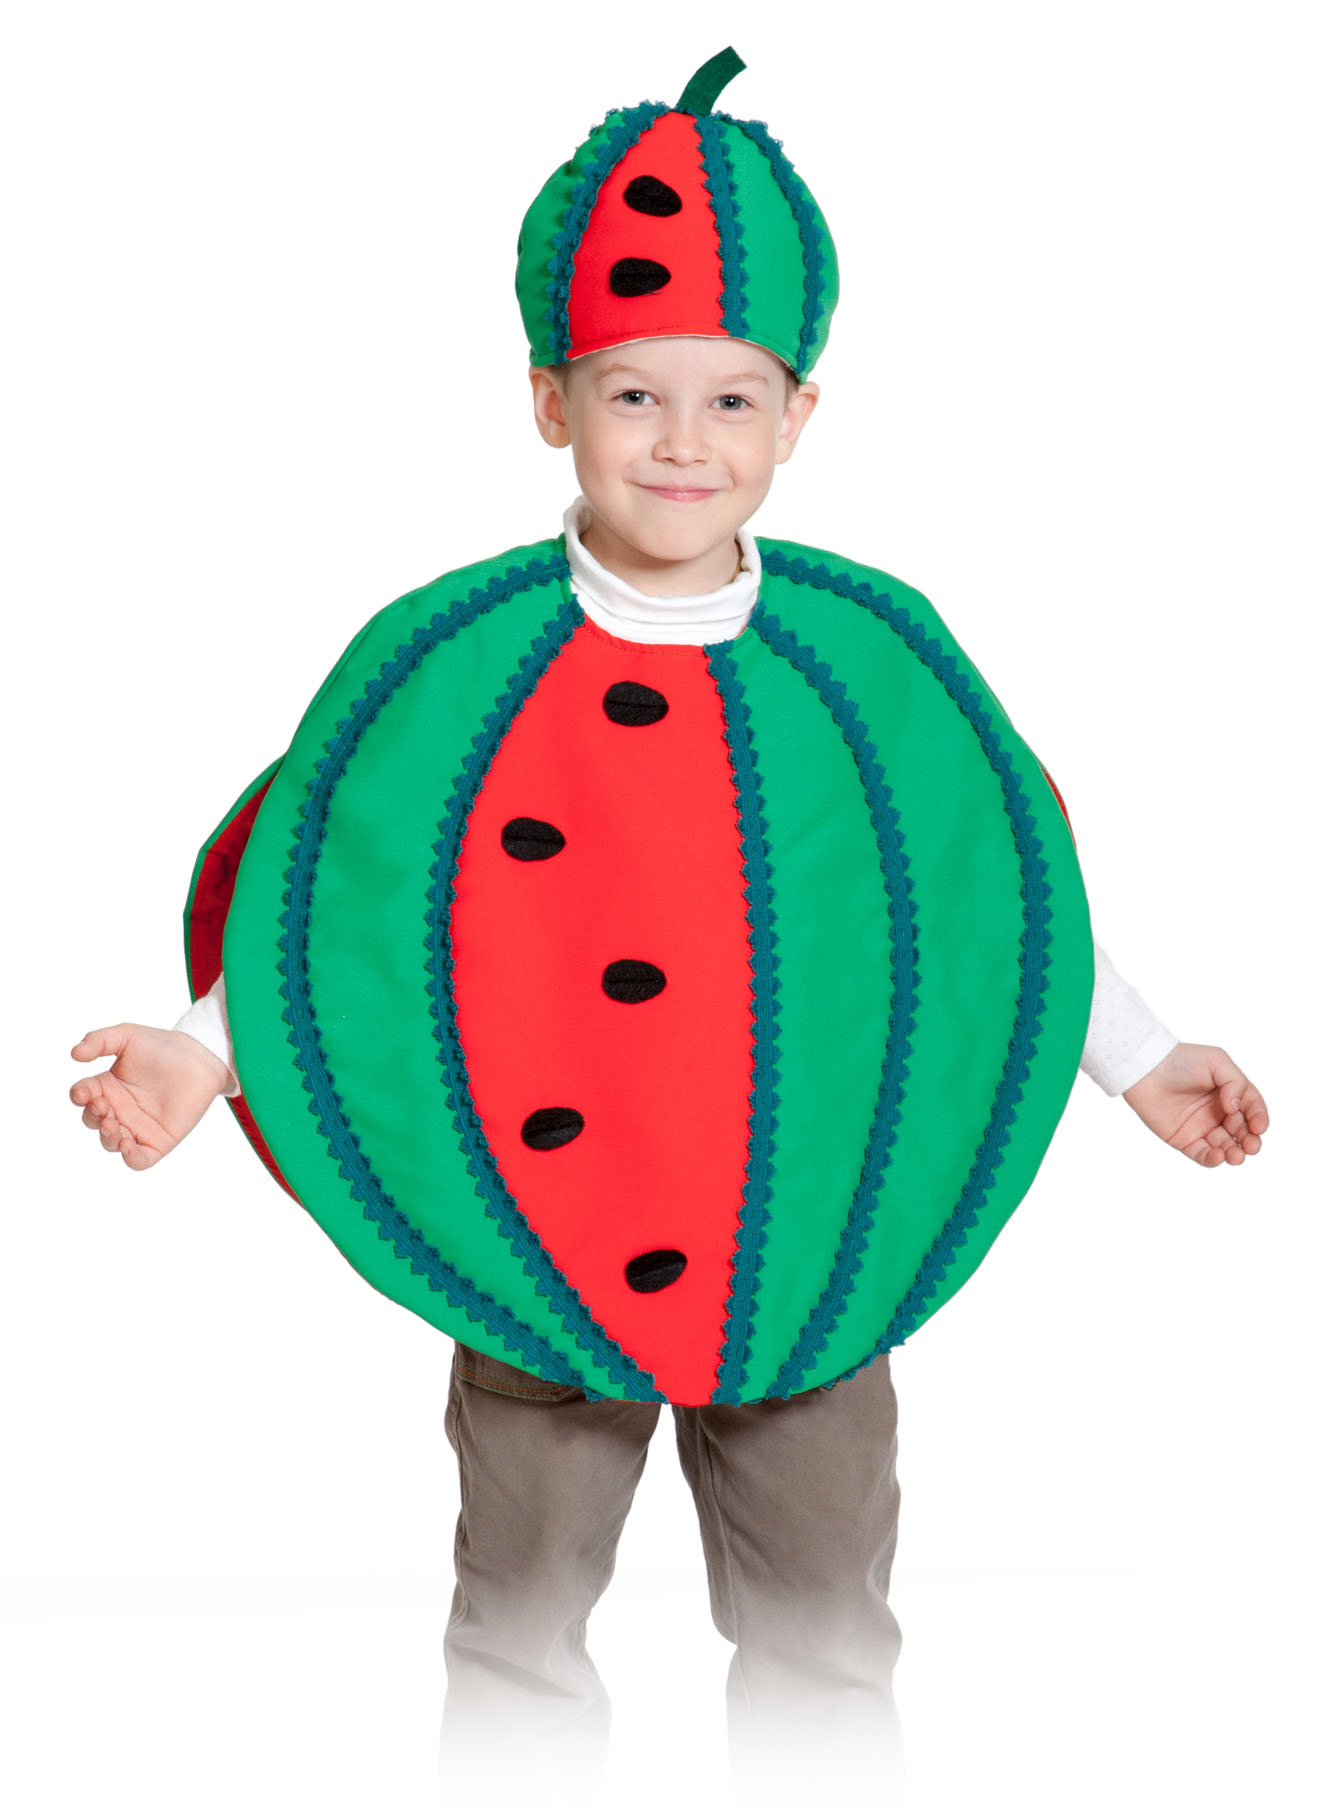 Одежда арбуза. Костюм Арбуз 5203. Костюм арбуза для мальчика. Ребенок в костюме арбуза. Костюм арбузика для мальчиков.